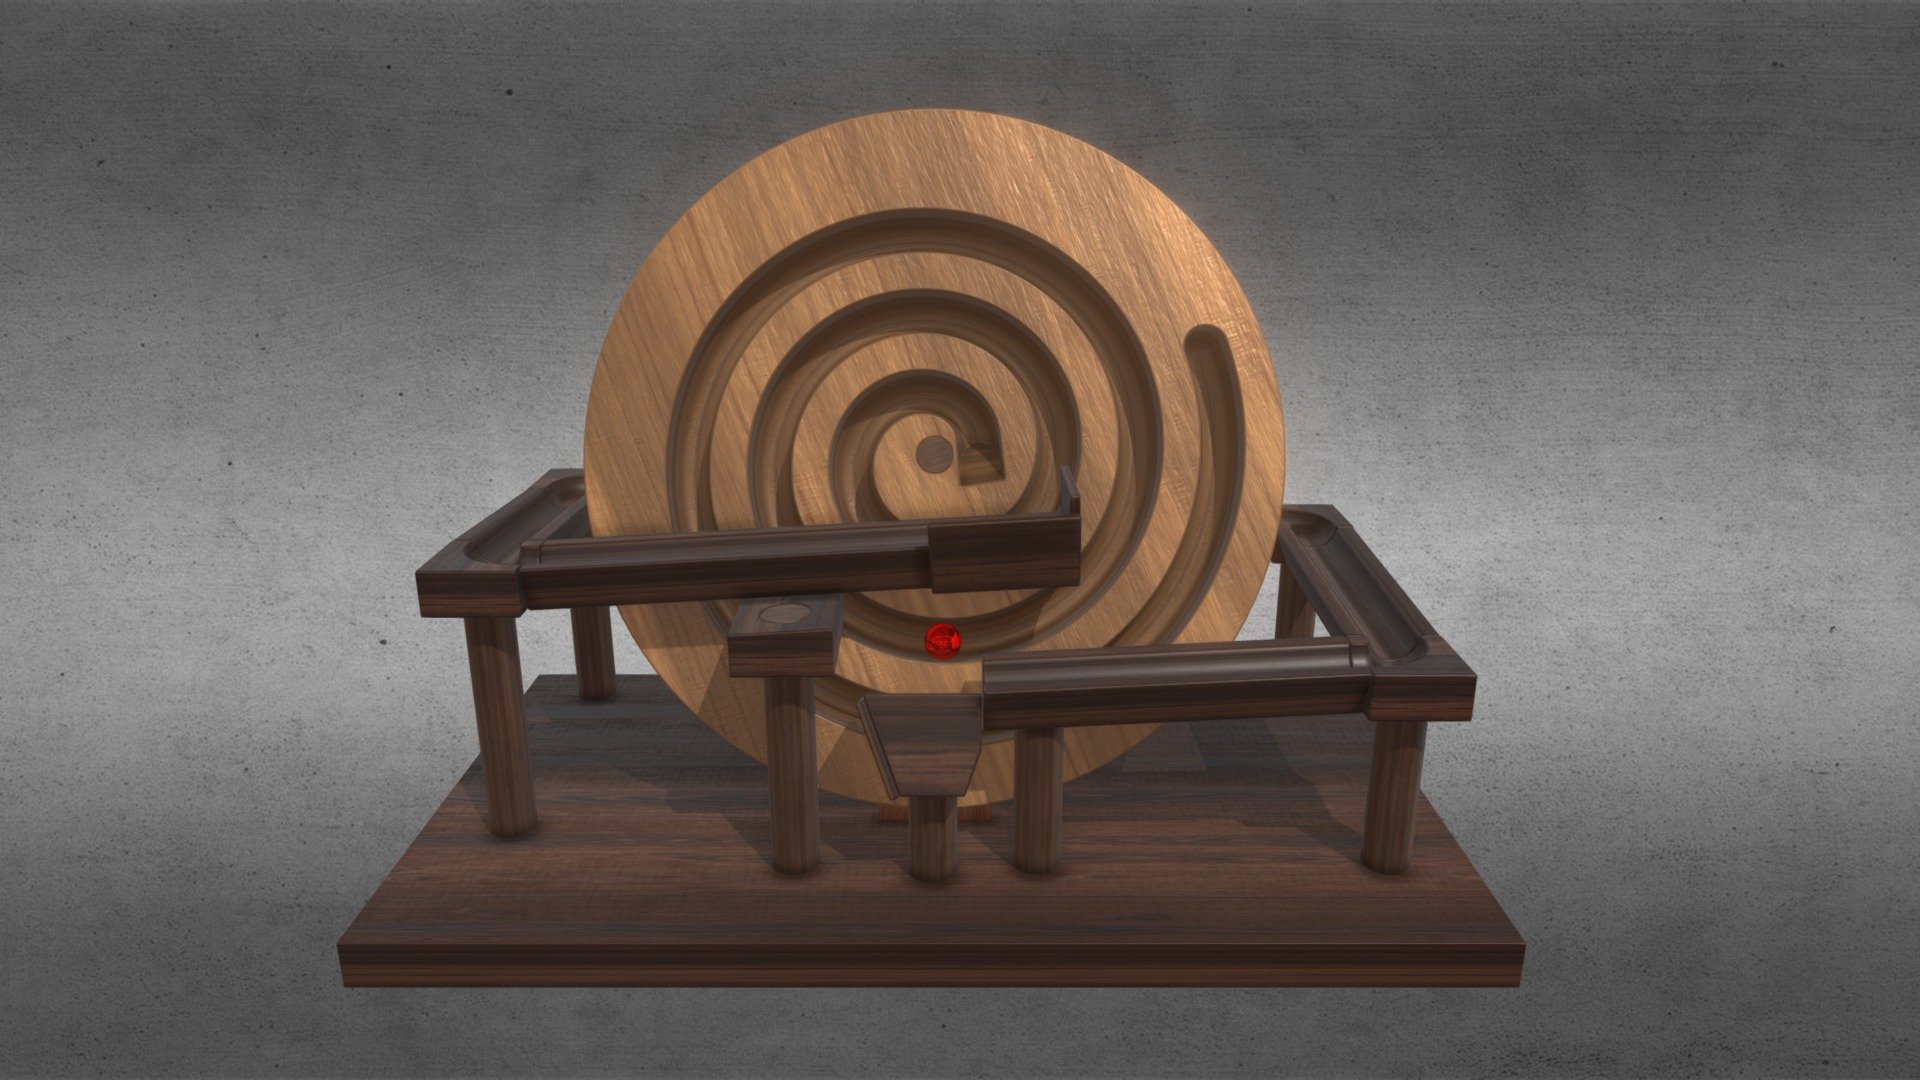 Spiral Marble Machine Wooden Toy